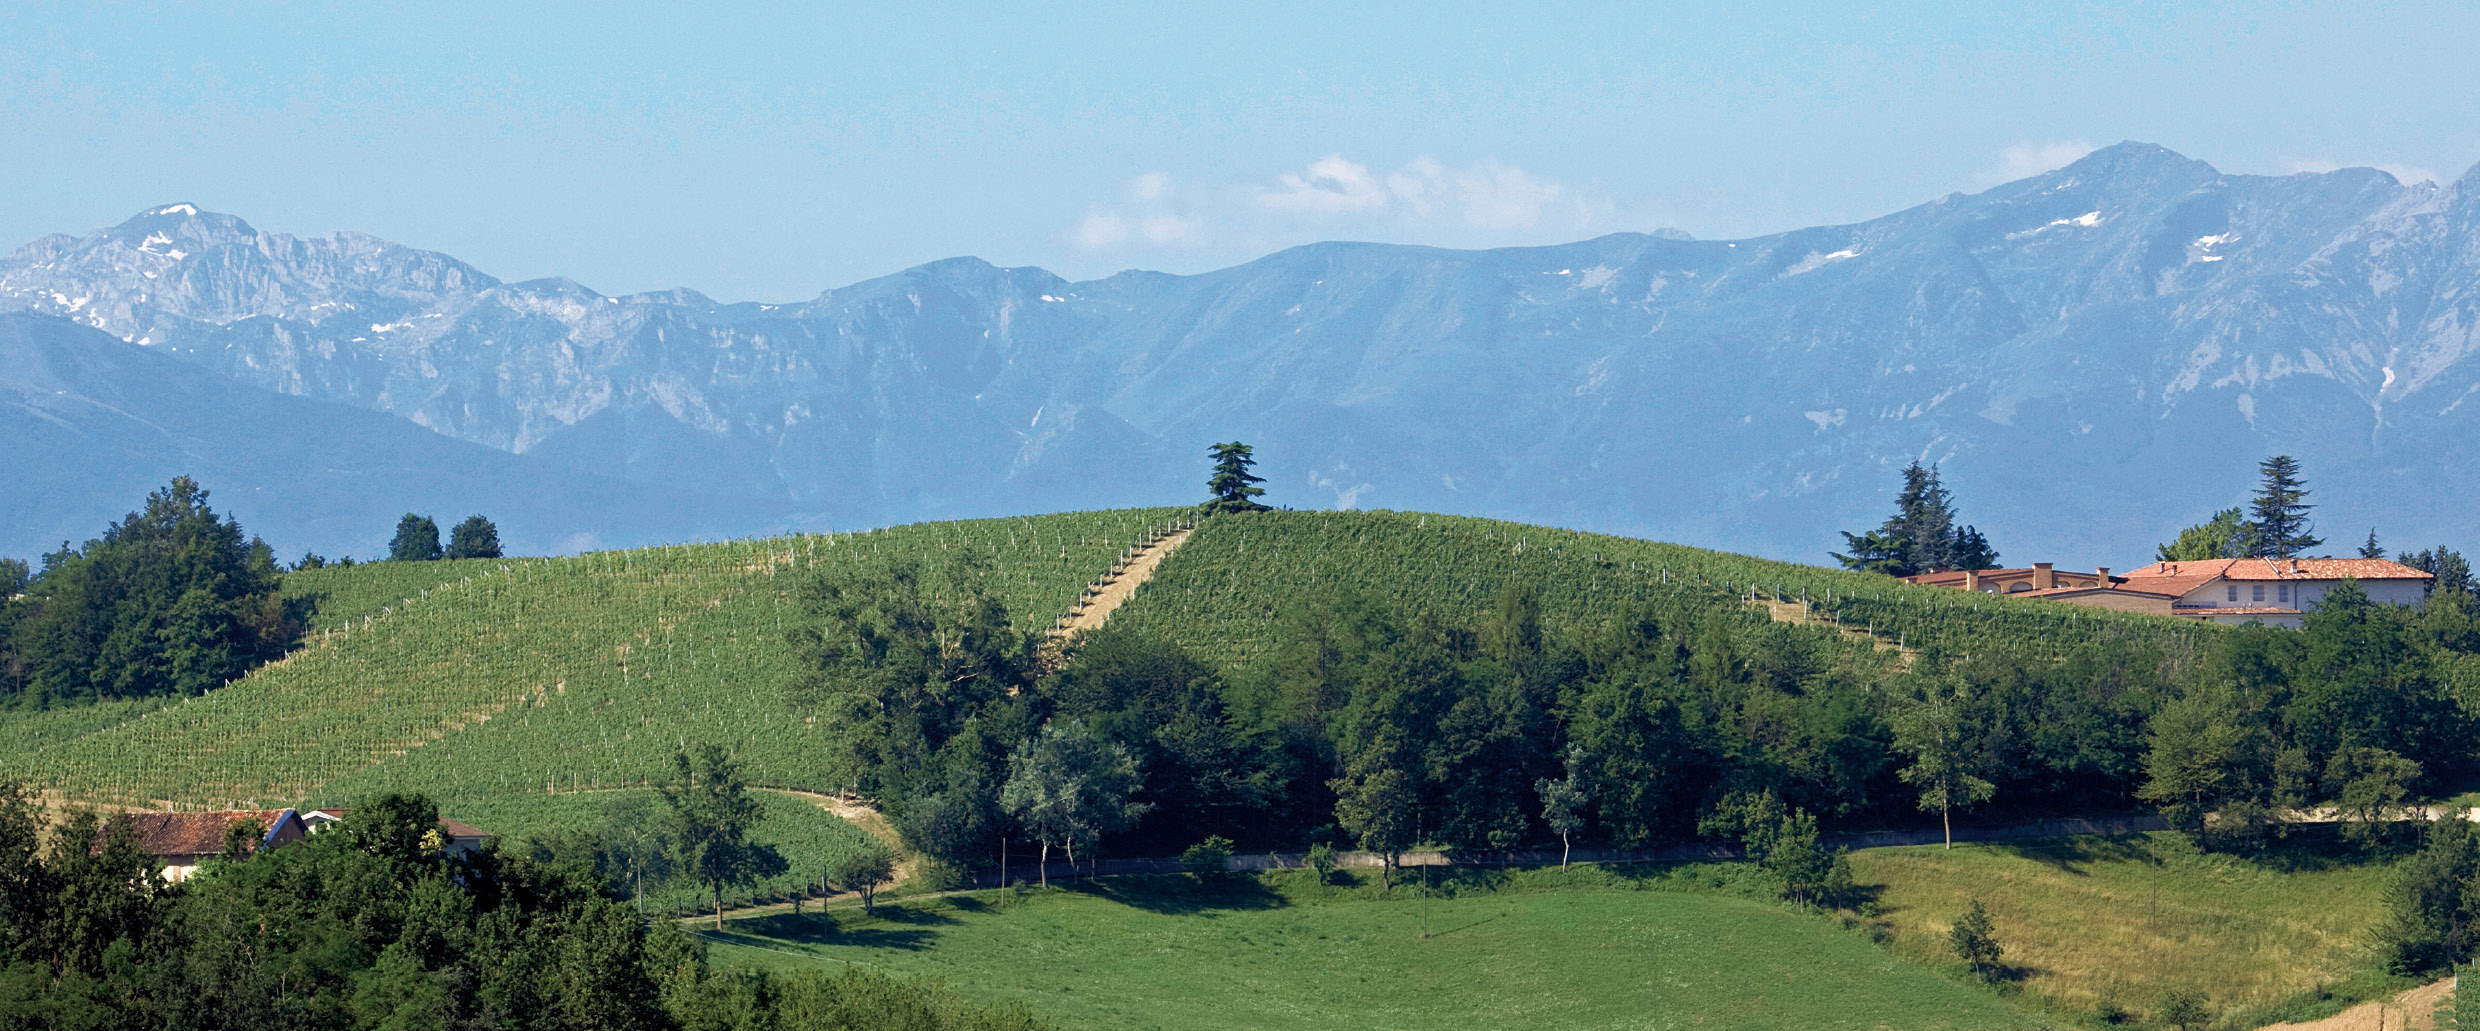 Wijngaard Briccolero van Chionetti op de heuvel San Luigi in Dogliani met Alpen op de achtergrond